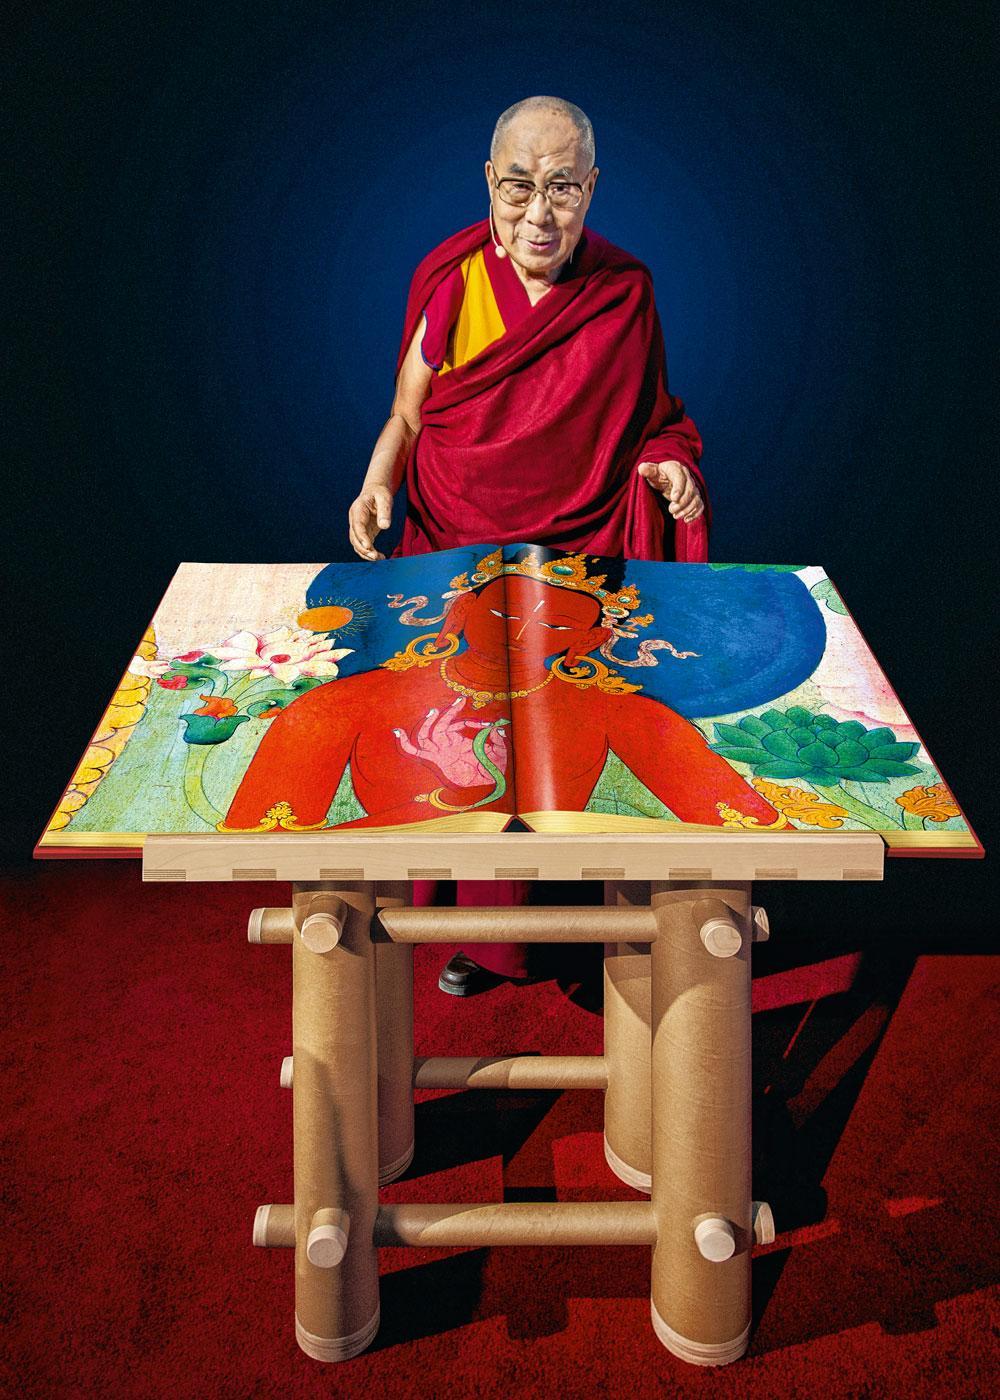 Les 1 000 exemplaires disponibles ont été dédicacés par le dalaï-lama en personne. Le lutrin conçu pour présenter cet ouvrage exceptionnel a, lui, été dessiné par l'architecte japonais Shigeru Ban, prix Pritzker 2014.